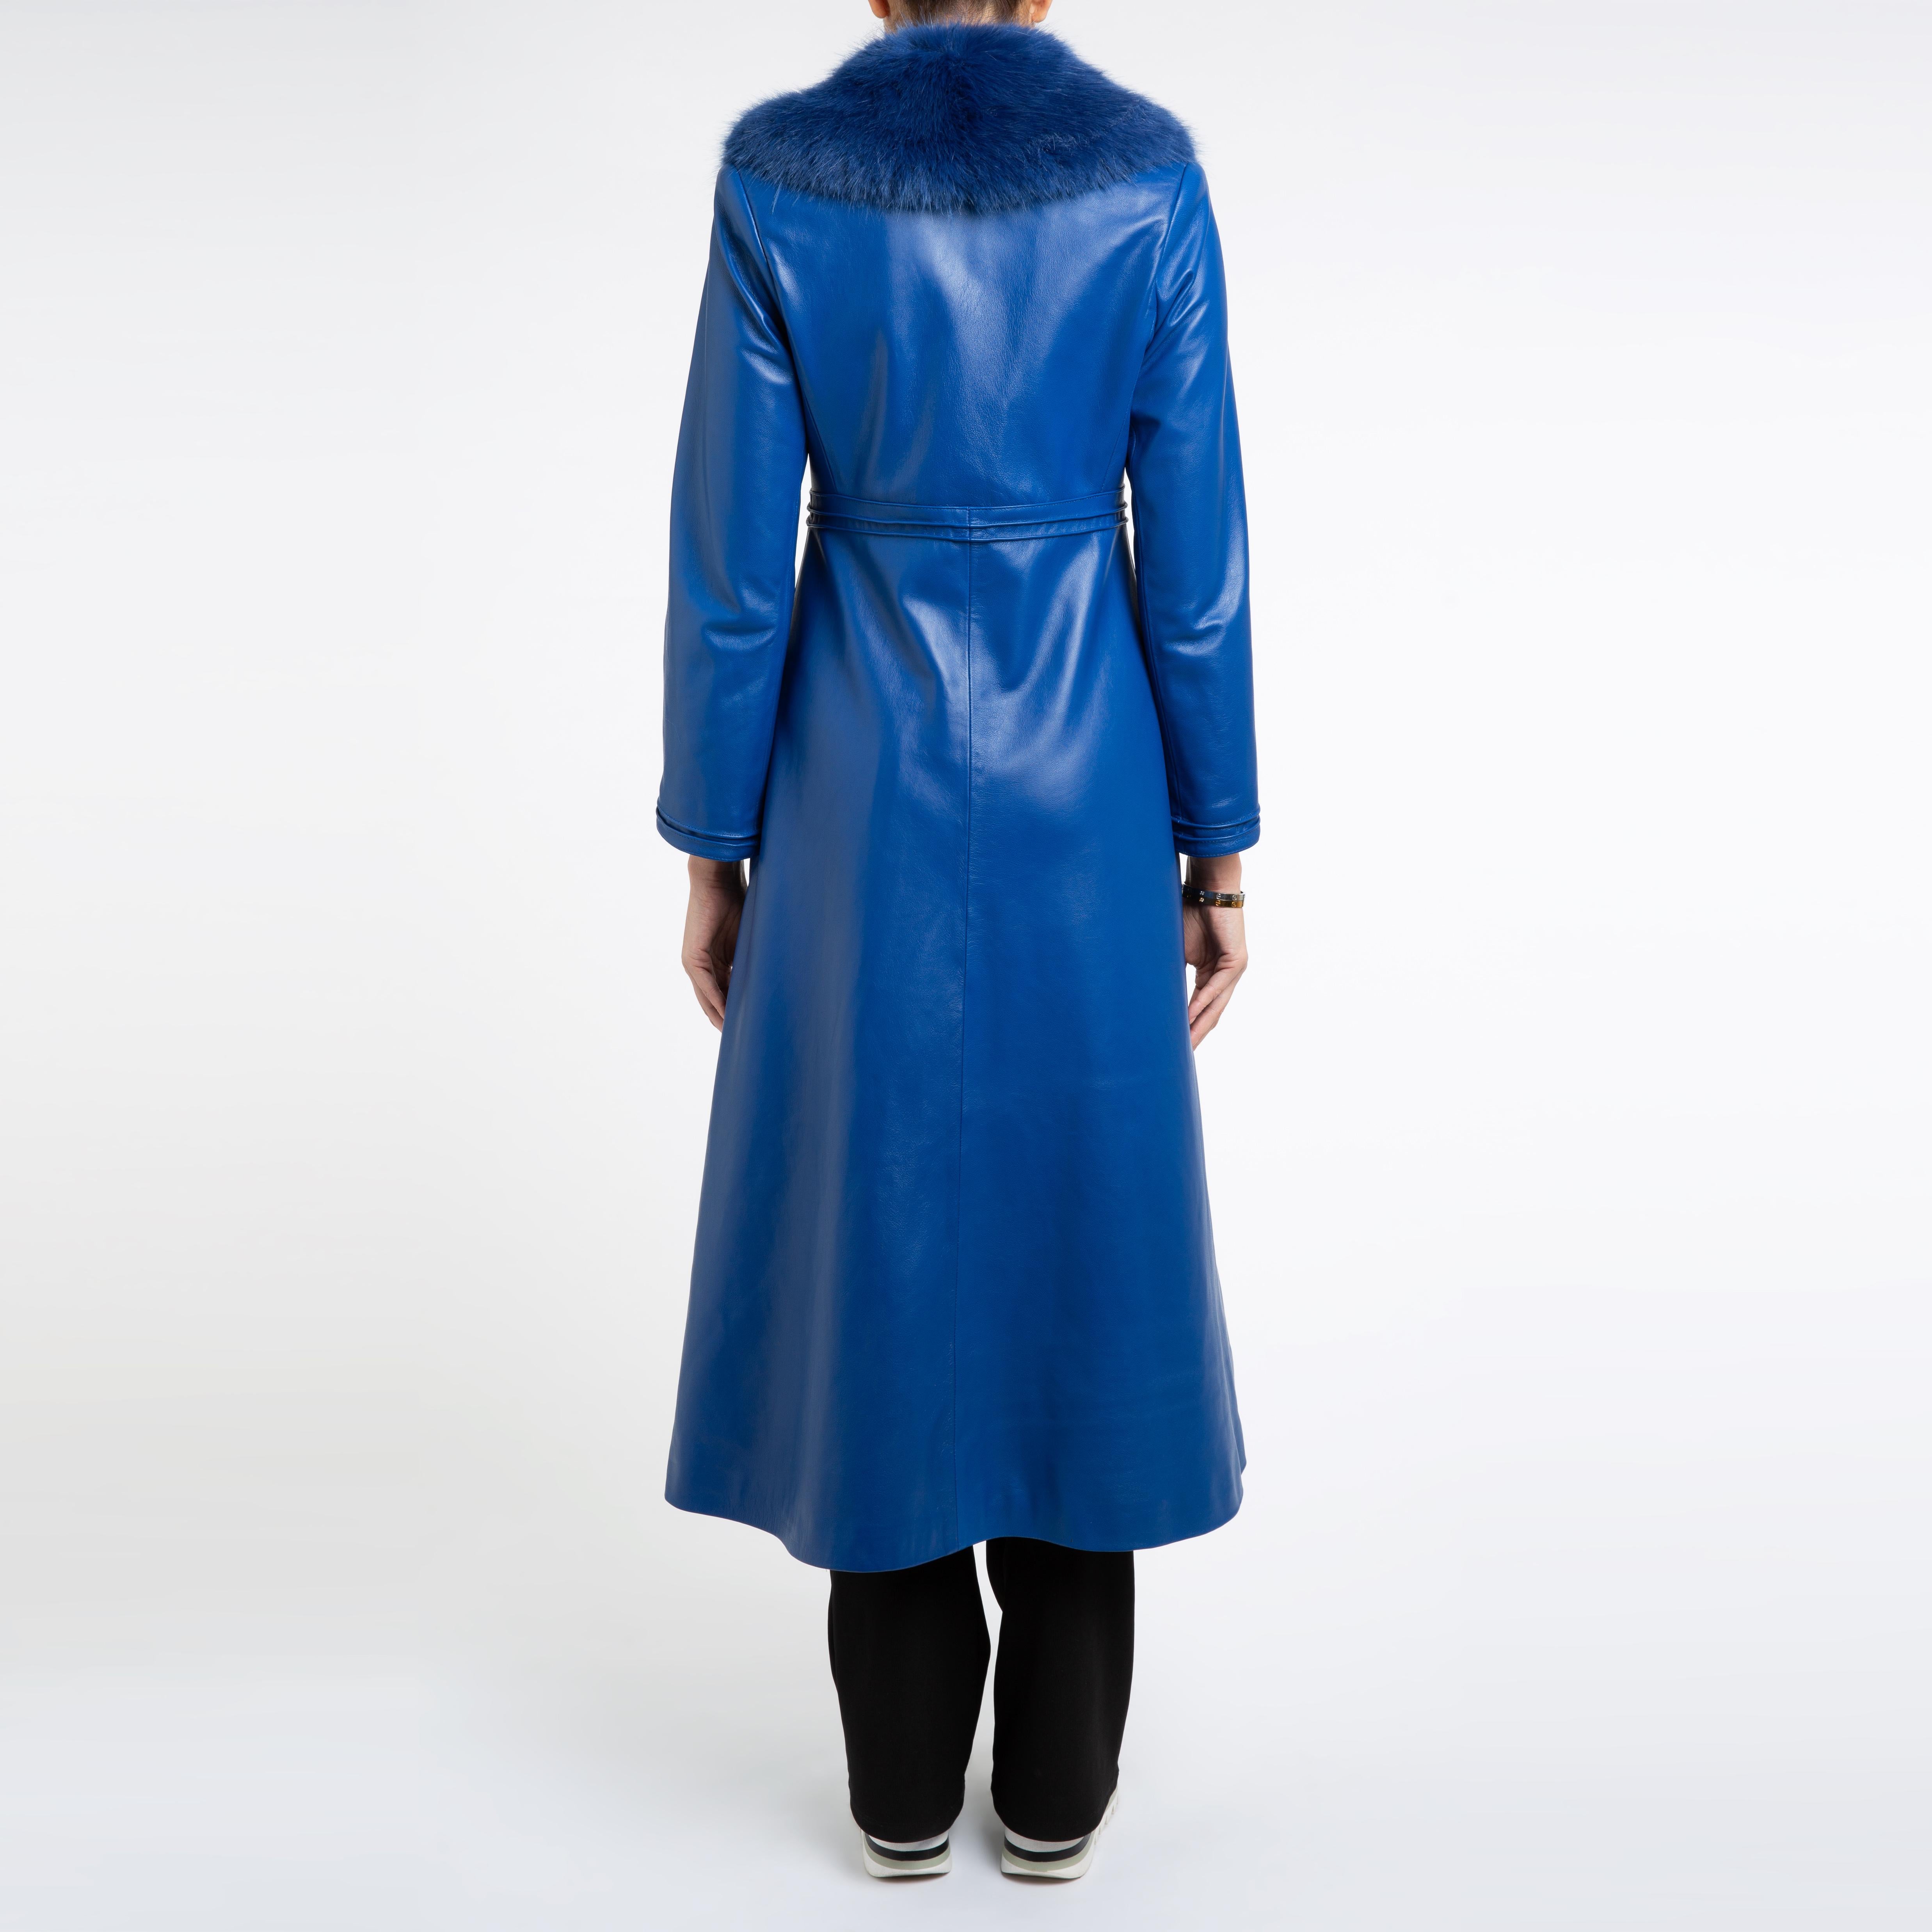 Verheyen London Edward Leather Coat in Blue with Faux Fur - Size uk 12 1